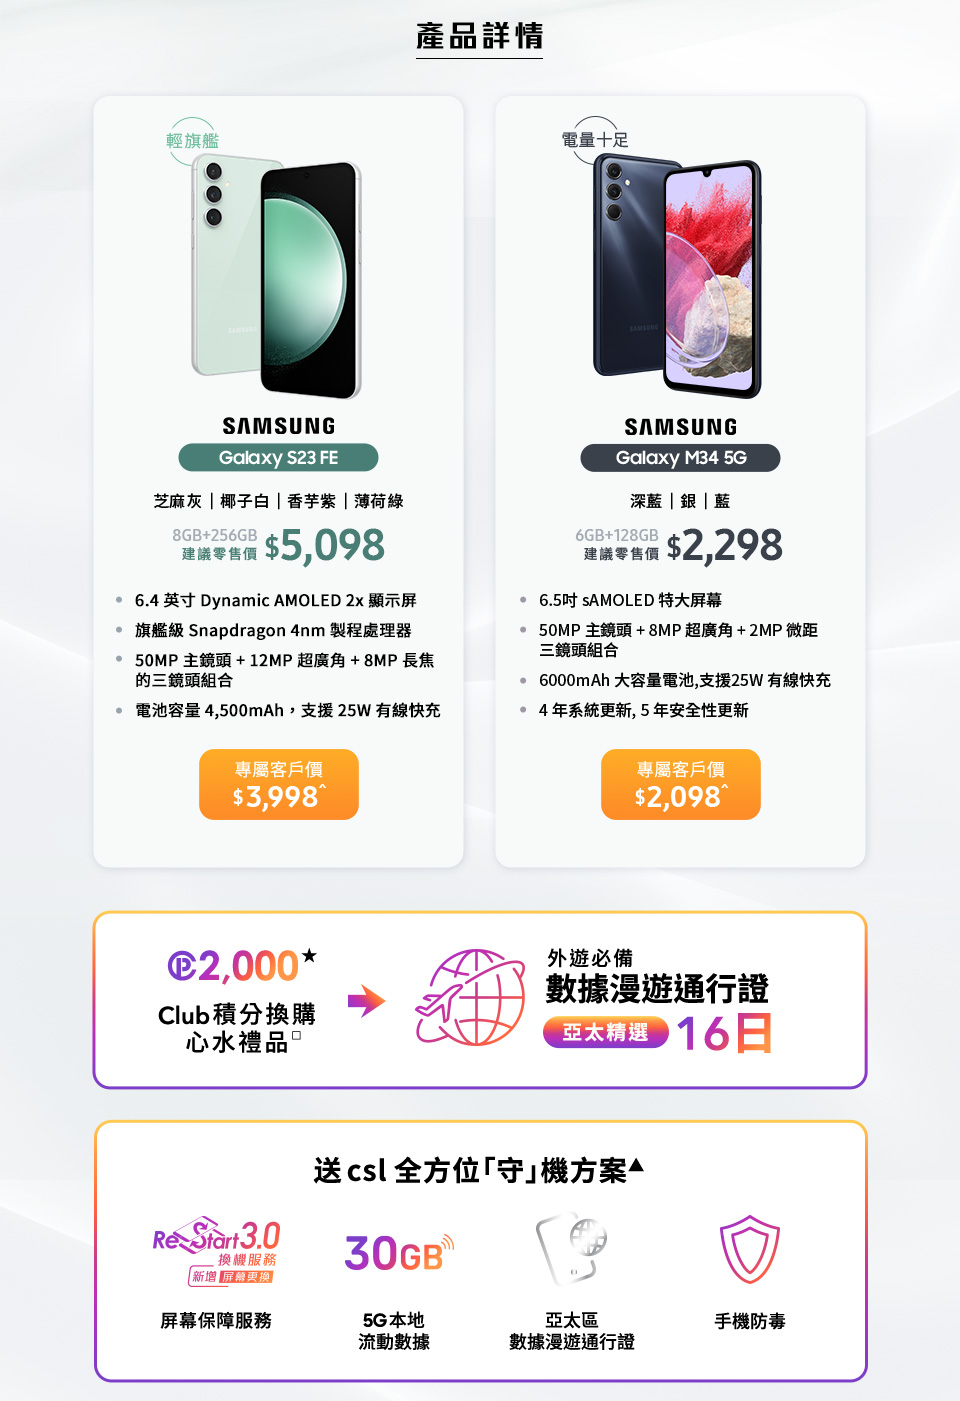 Samsung Galaxy S23 FE | Galaxy M34 5G